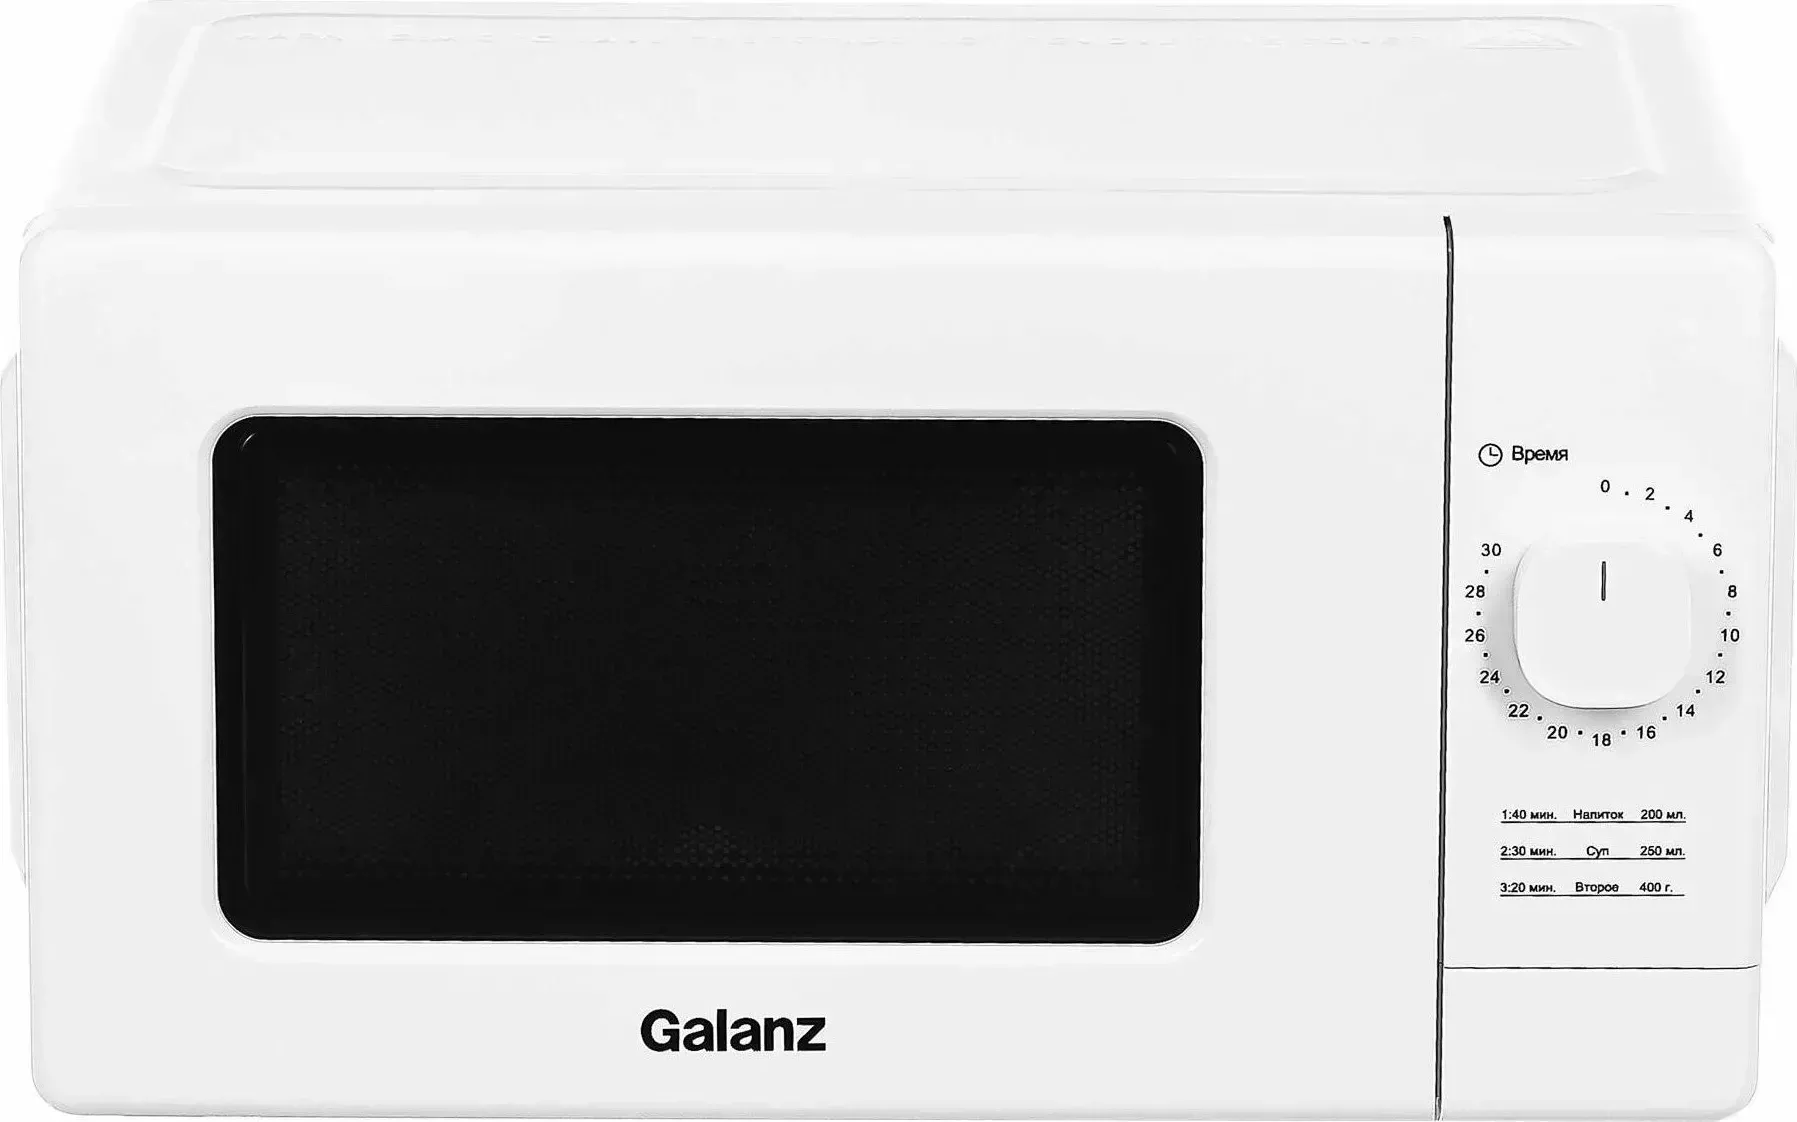 Микроволновая печь Galanz MOS-2008MW белый